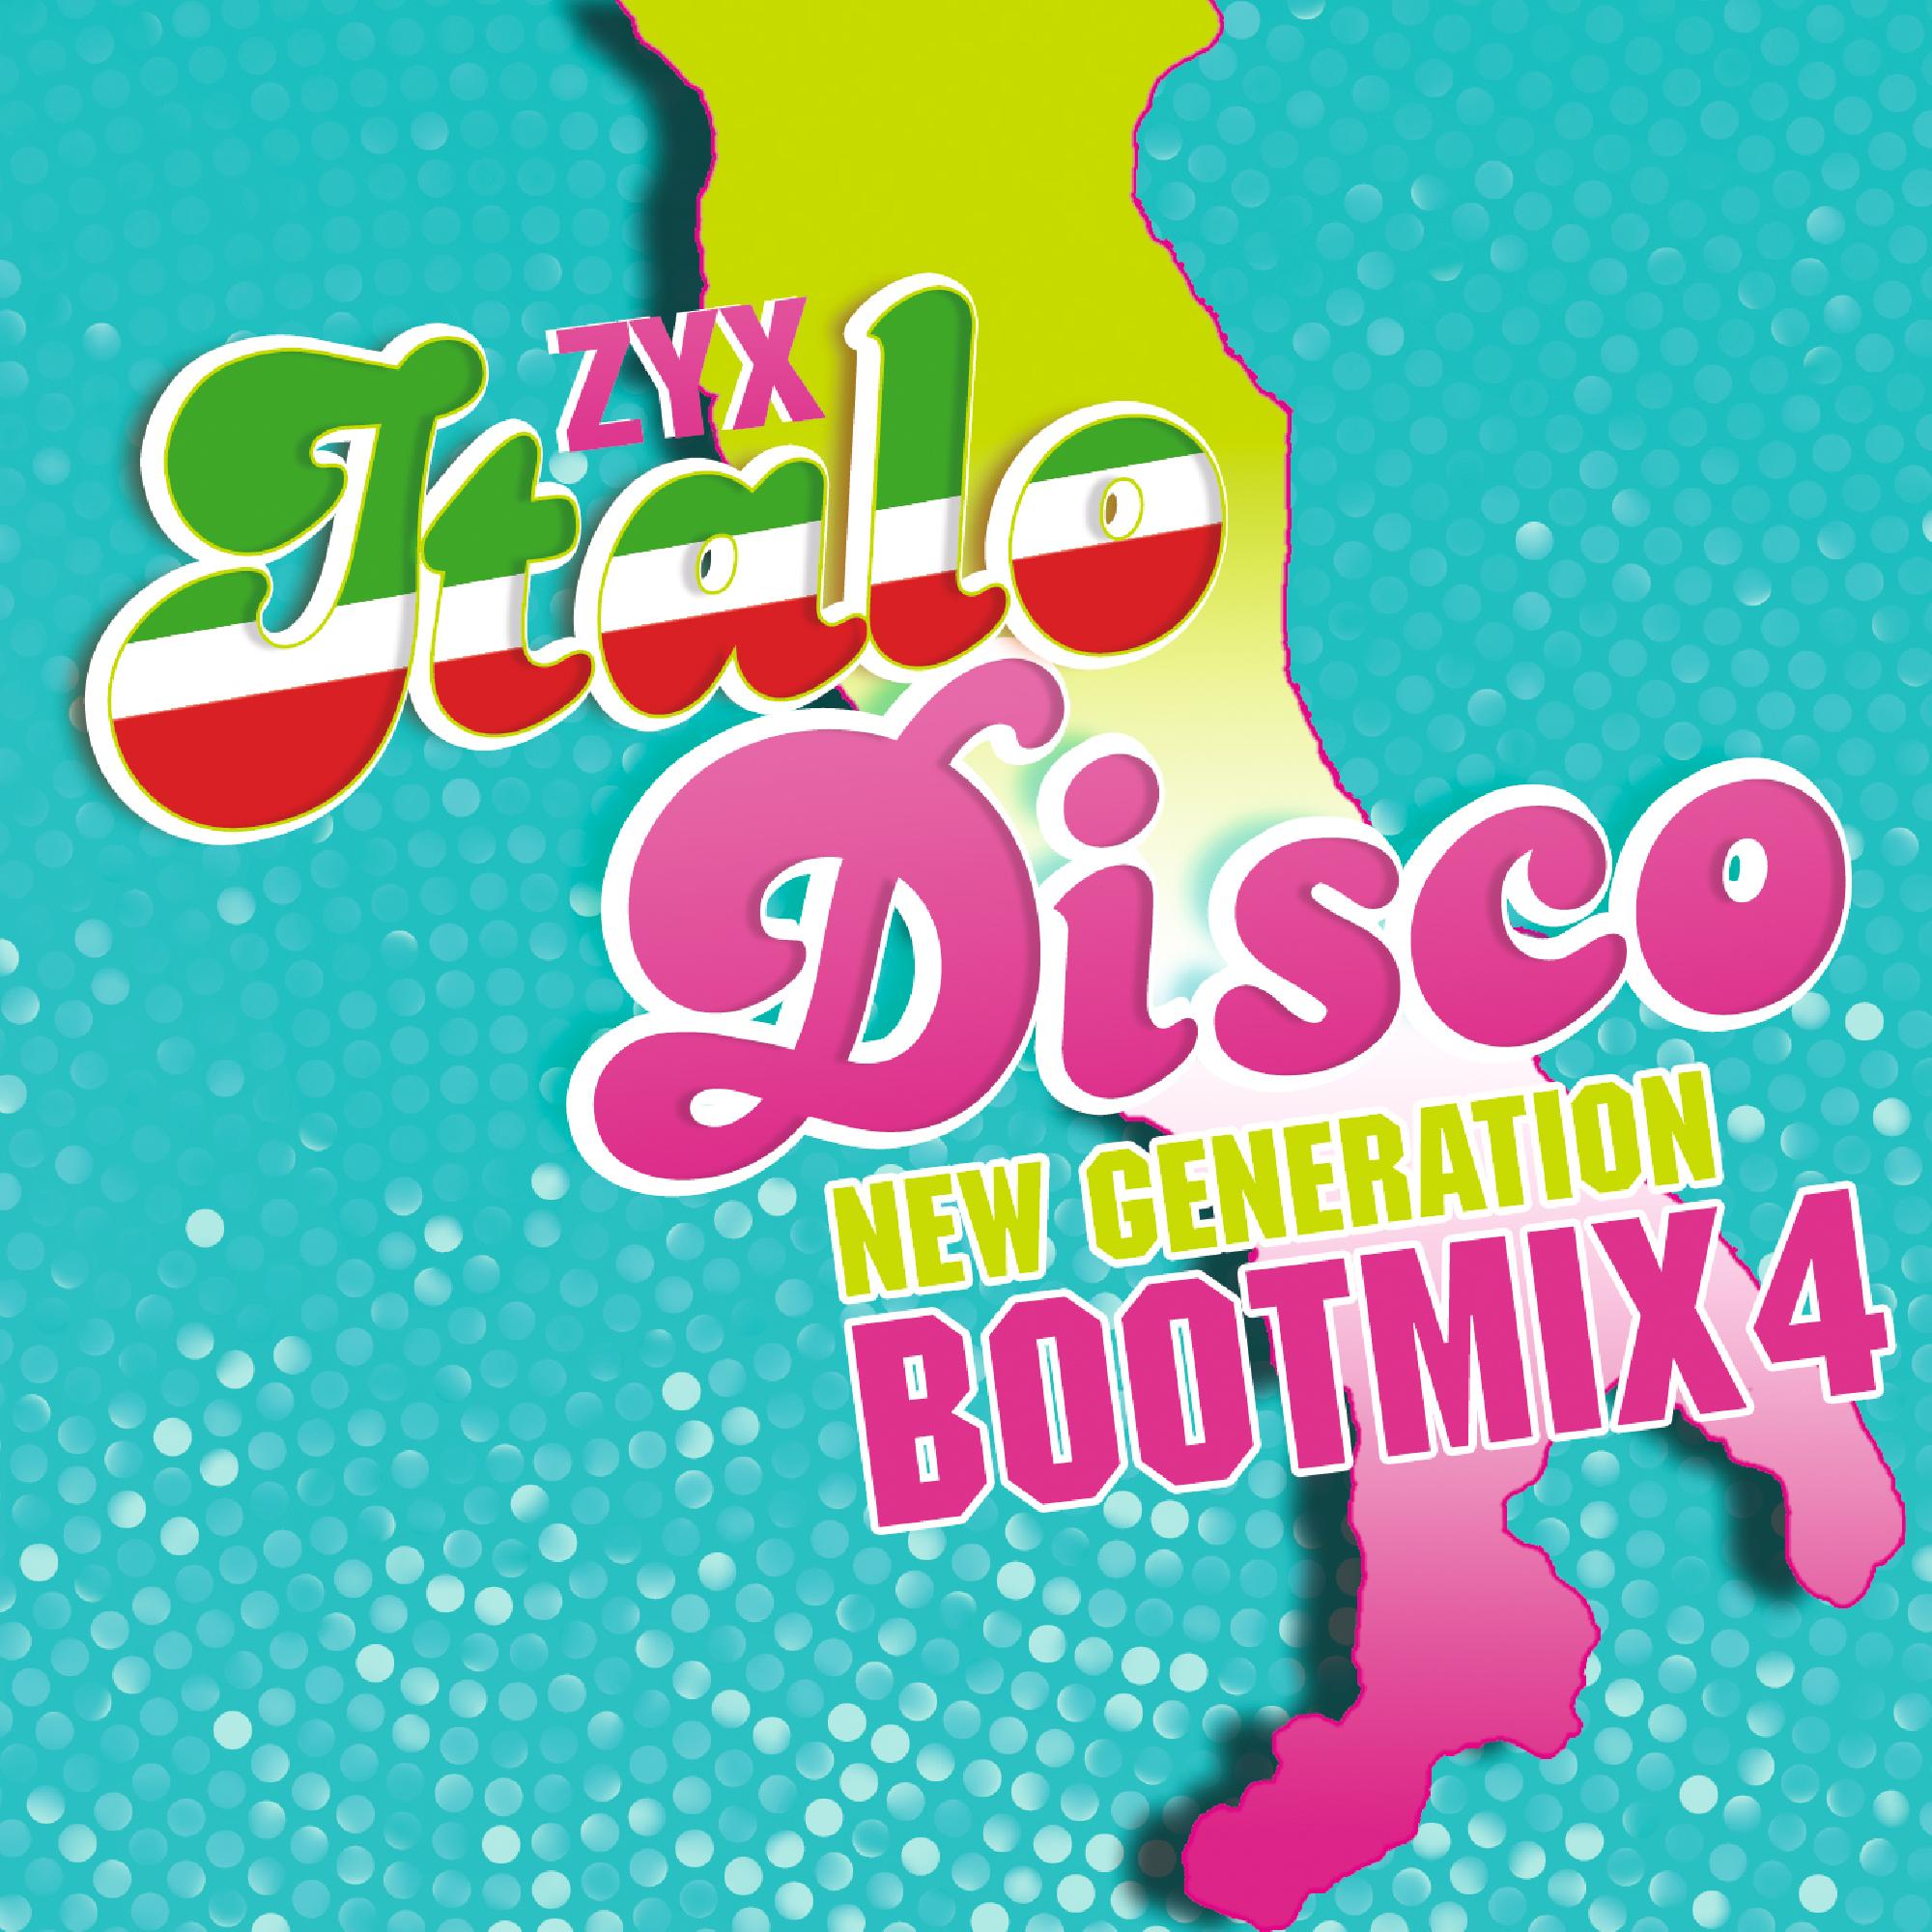 Zyx italo disco new. Italo Disco New Generation. ZYX Italo Disco New Generation. ZYX Italo Disco New Generation Vol.17. ZYX Italo Disco Boot Mix.